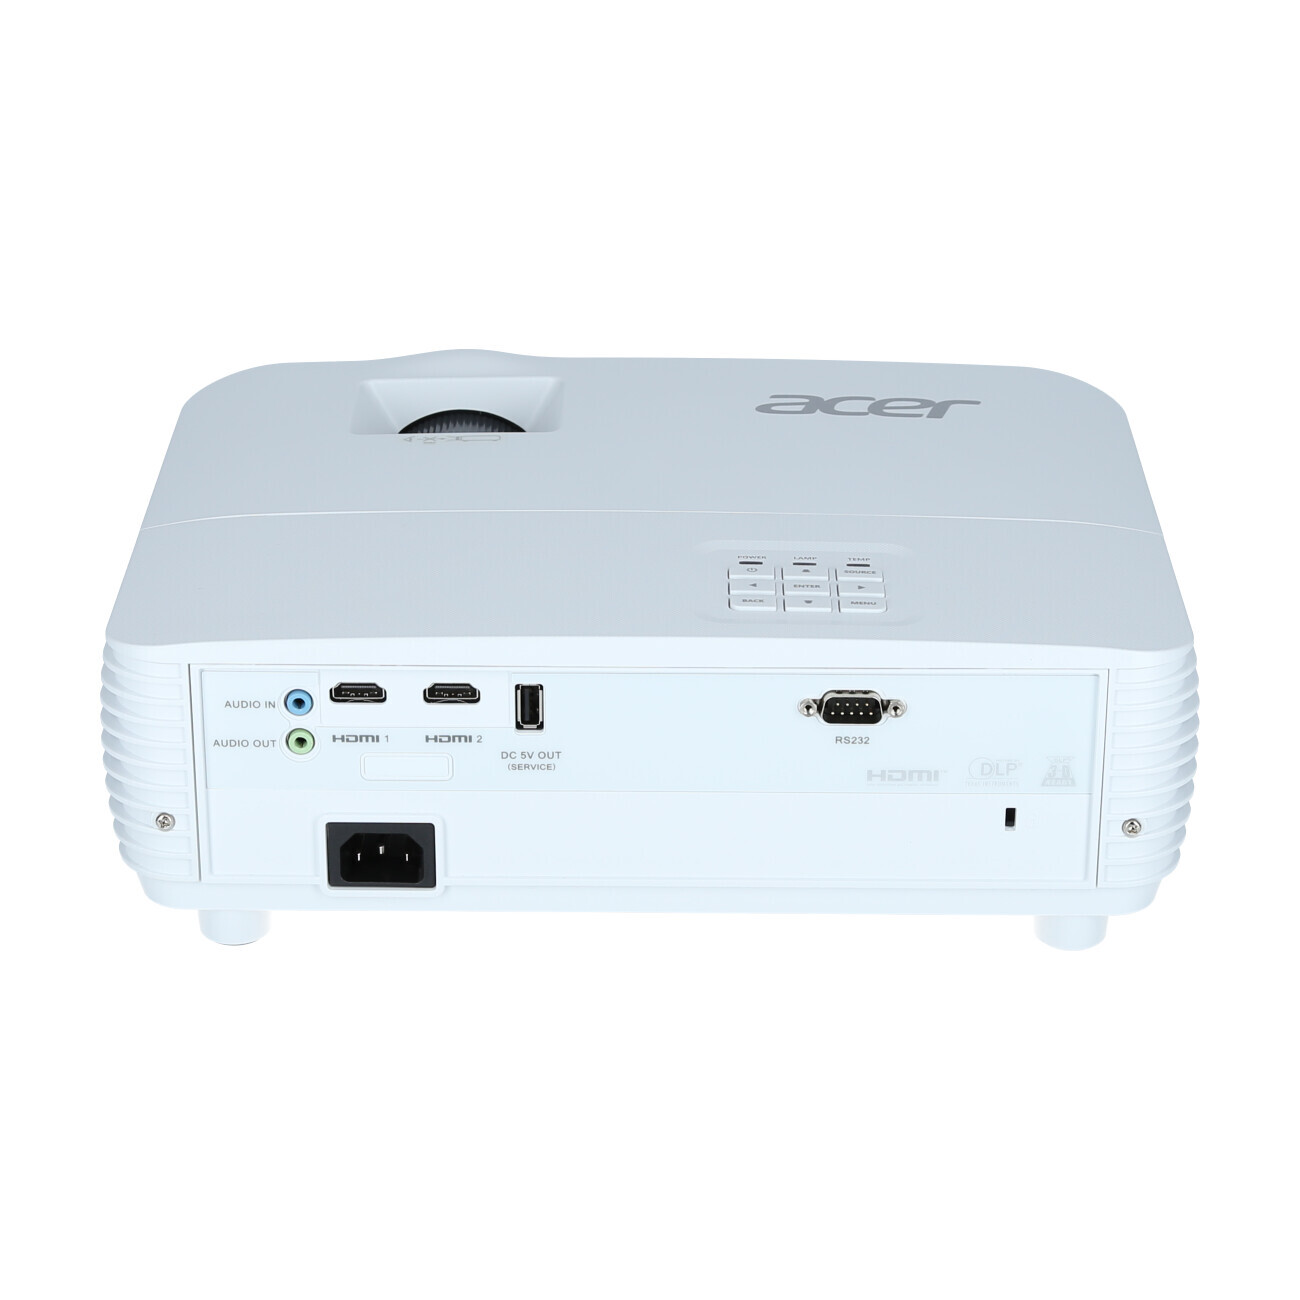 Vorschau: Acer H6543BDK - Heimkino-Beamer mit 4500 ANSI-Lumen und Full-HD Auflösung